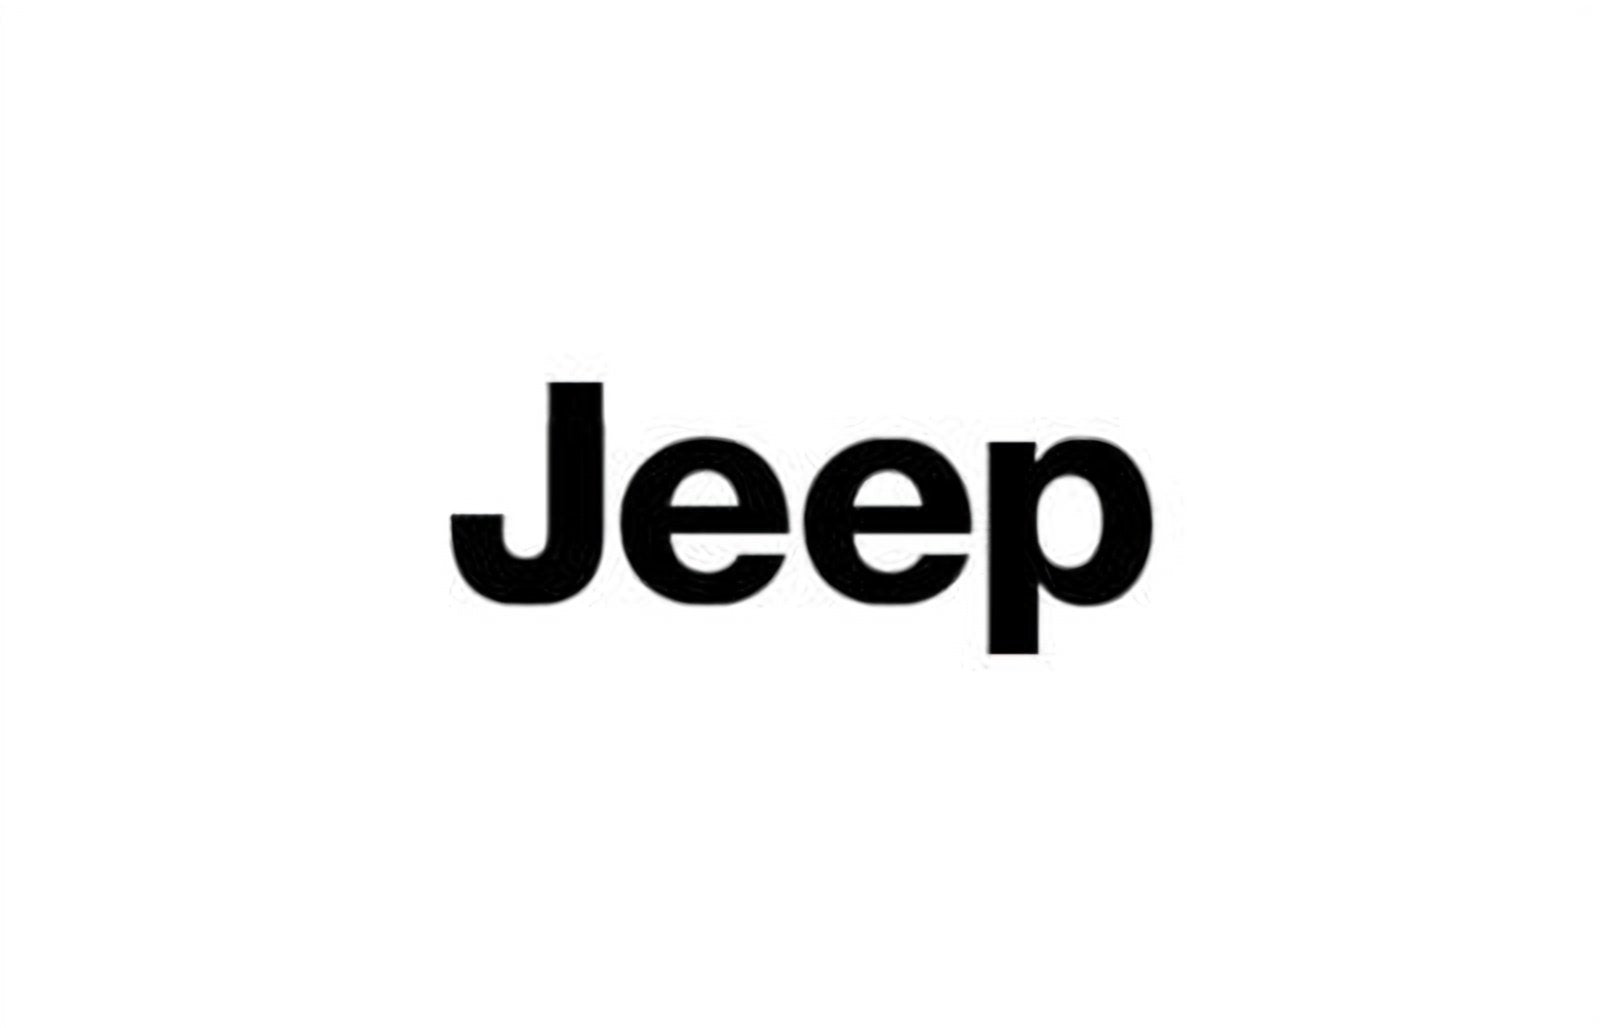 logo della collezione batterie jeep di puntobatterie